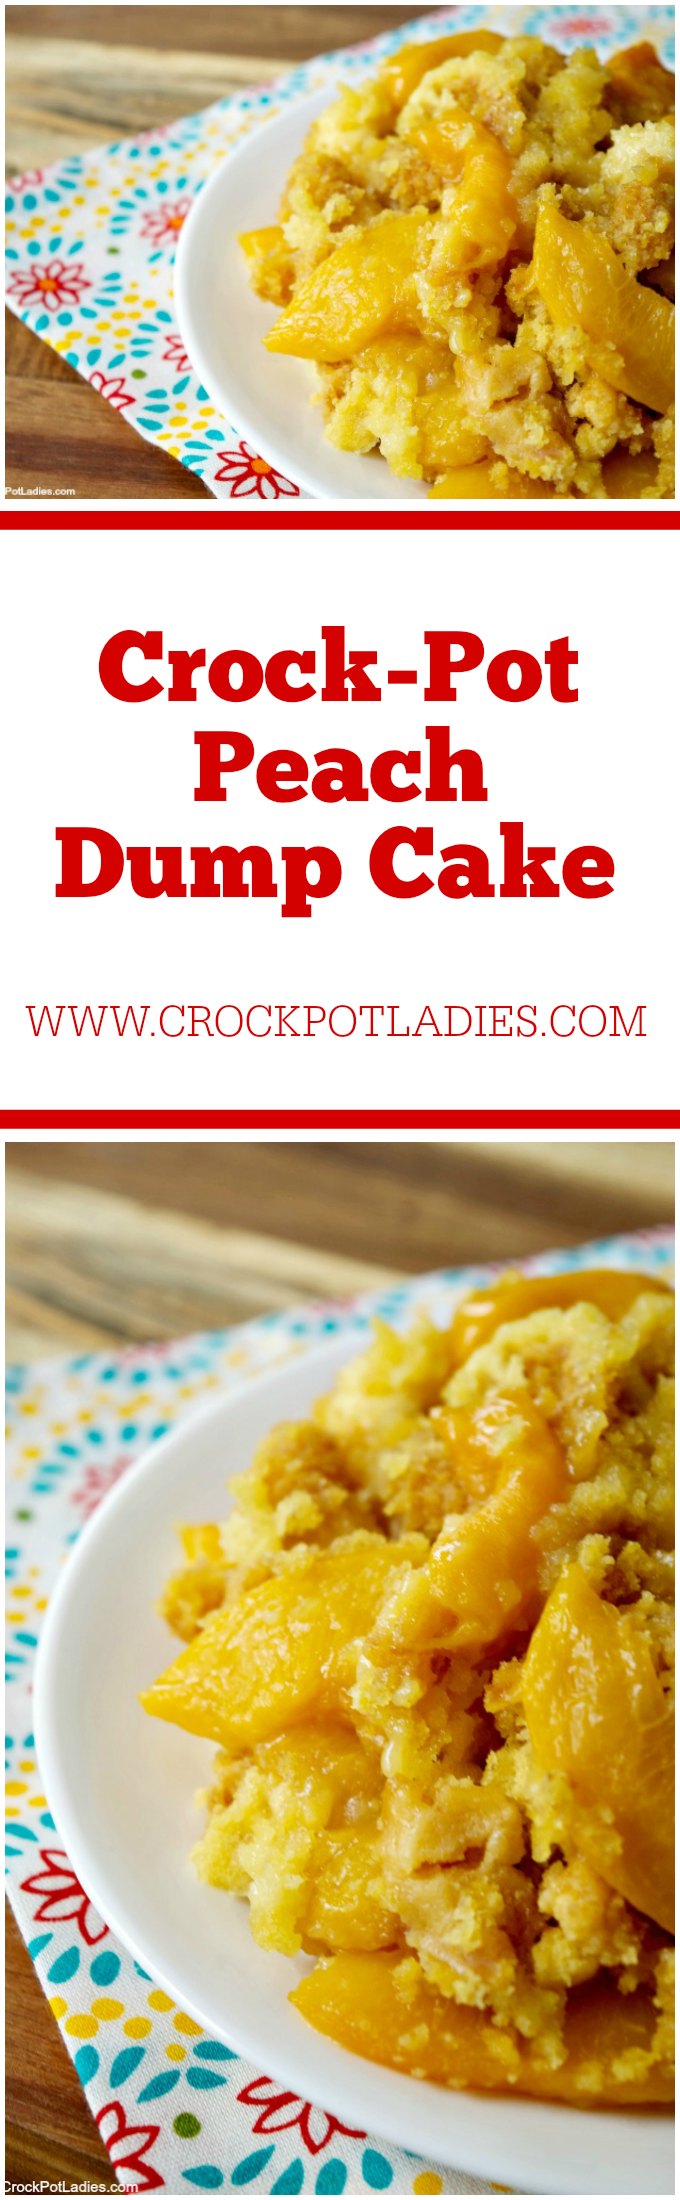 Crock-Pot Peach Dump Cake